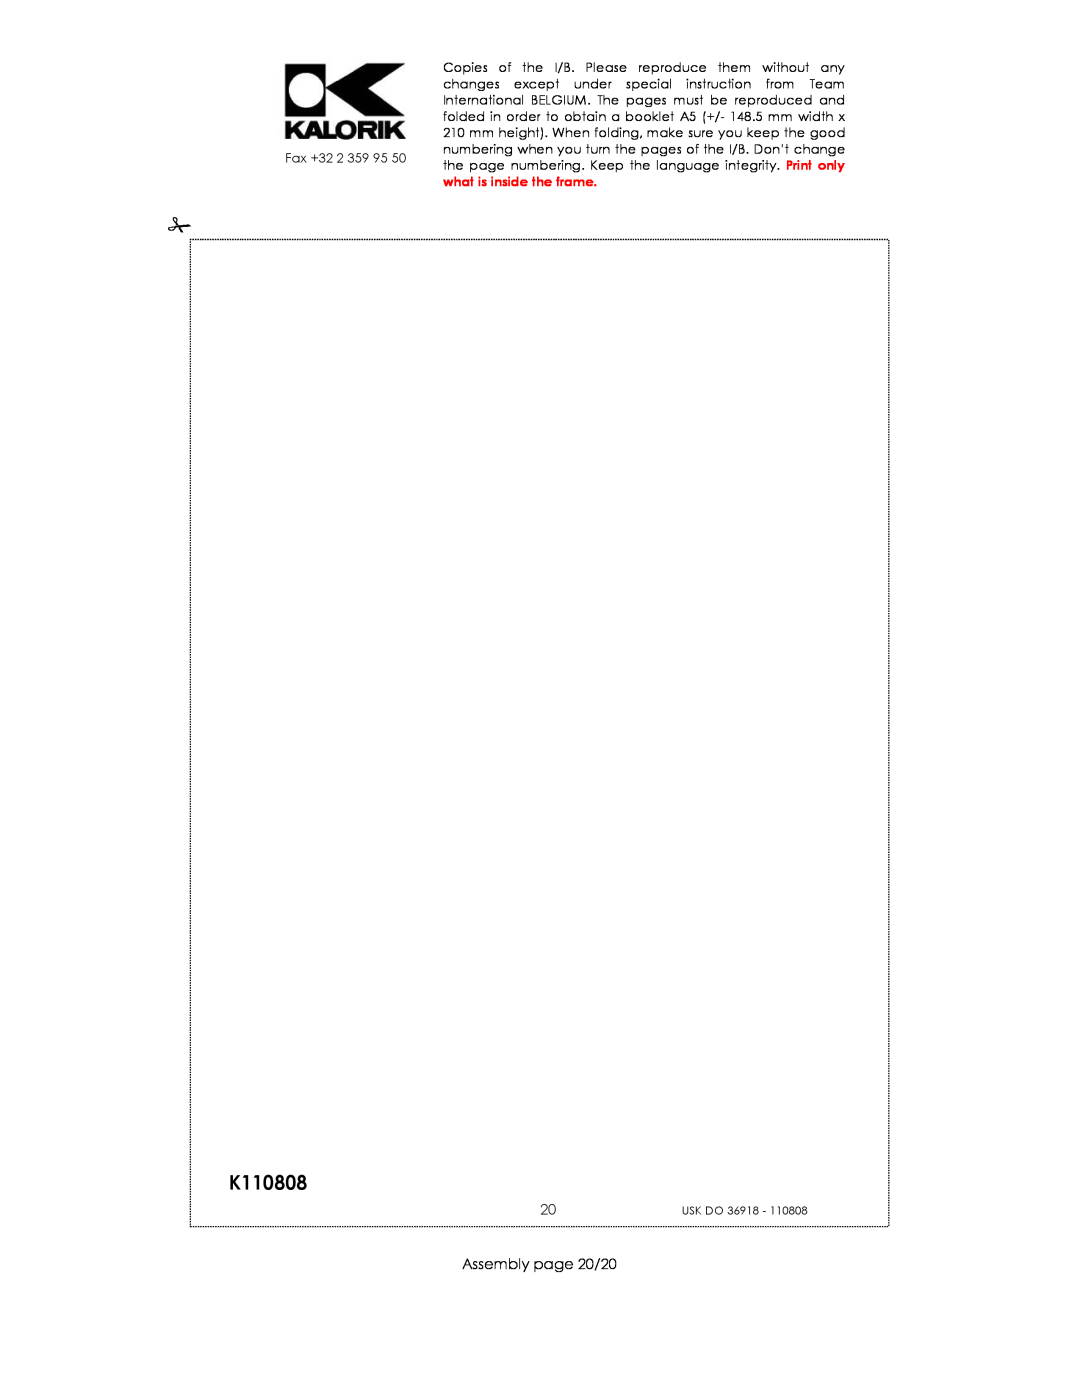 Kalorik USK DO 36918 manual K110808, Assembly page 20/20 